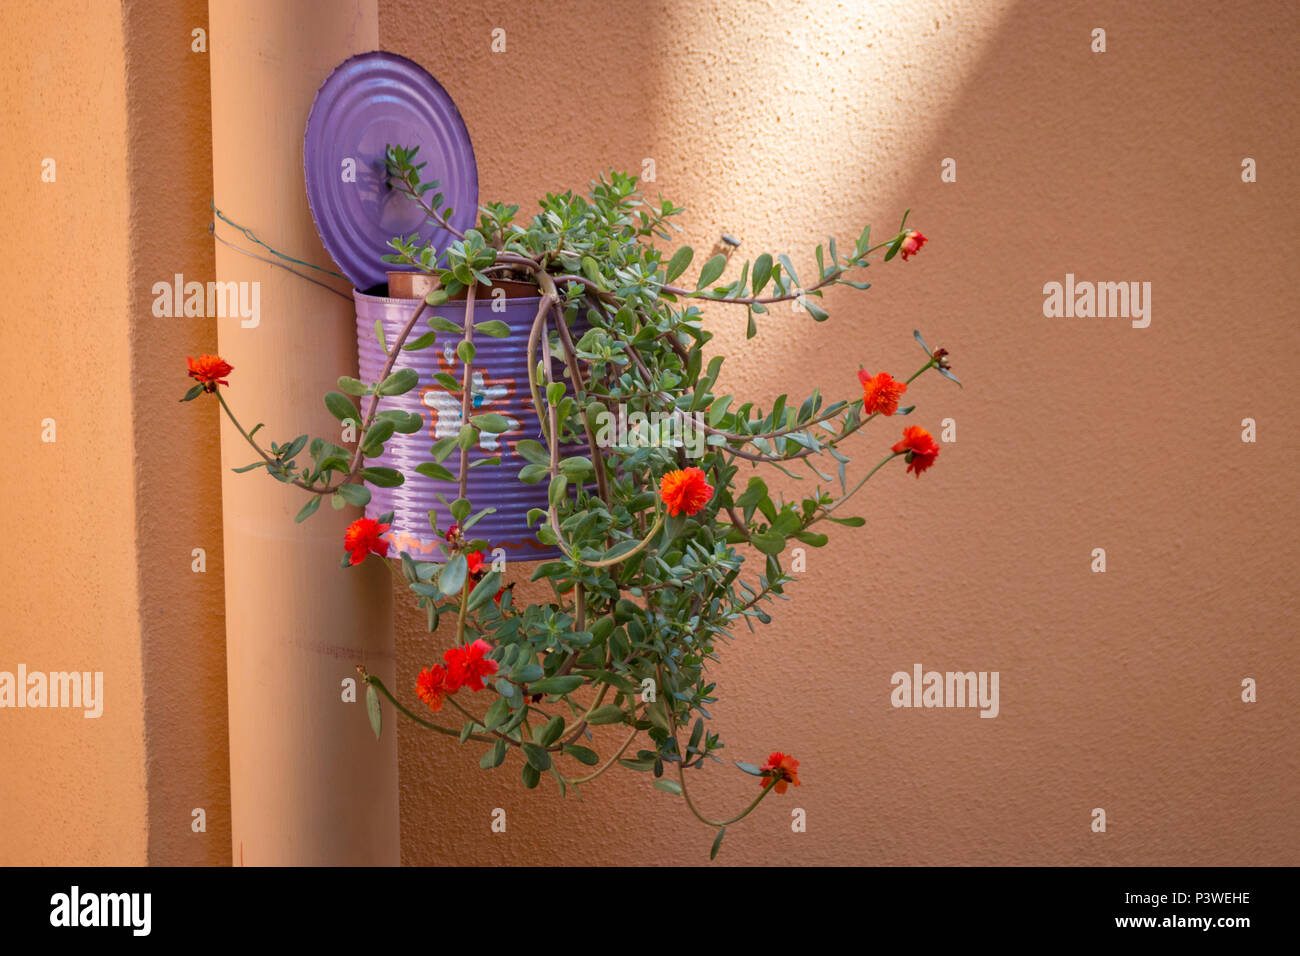 Eine bunte lackiert kann als kreativer hängender Blumentopf an einer Wand verwendet Stockfoto